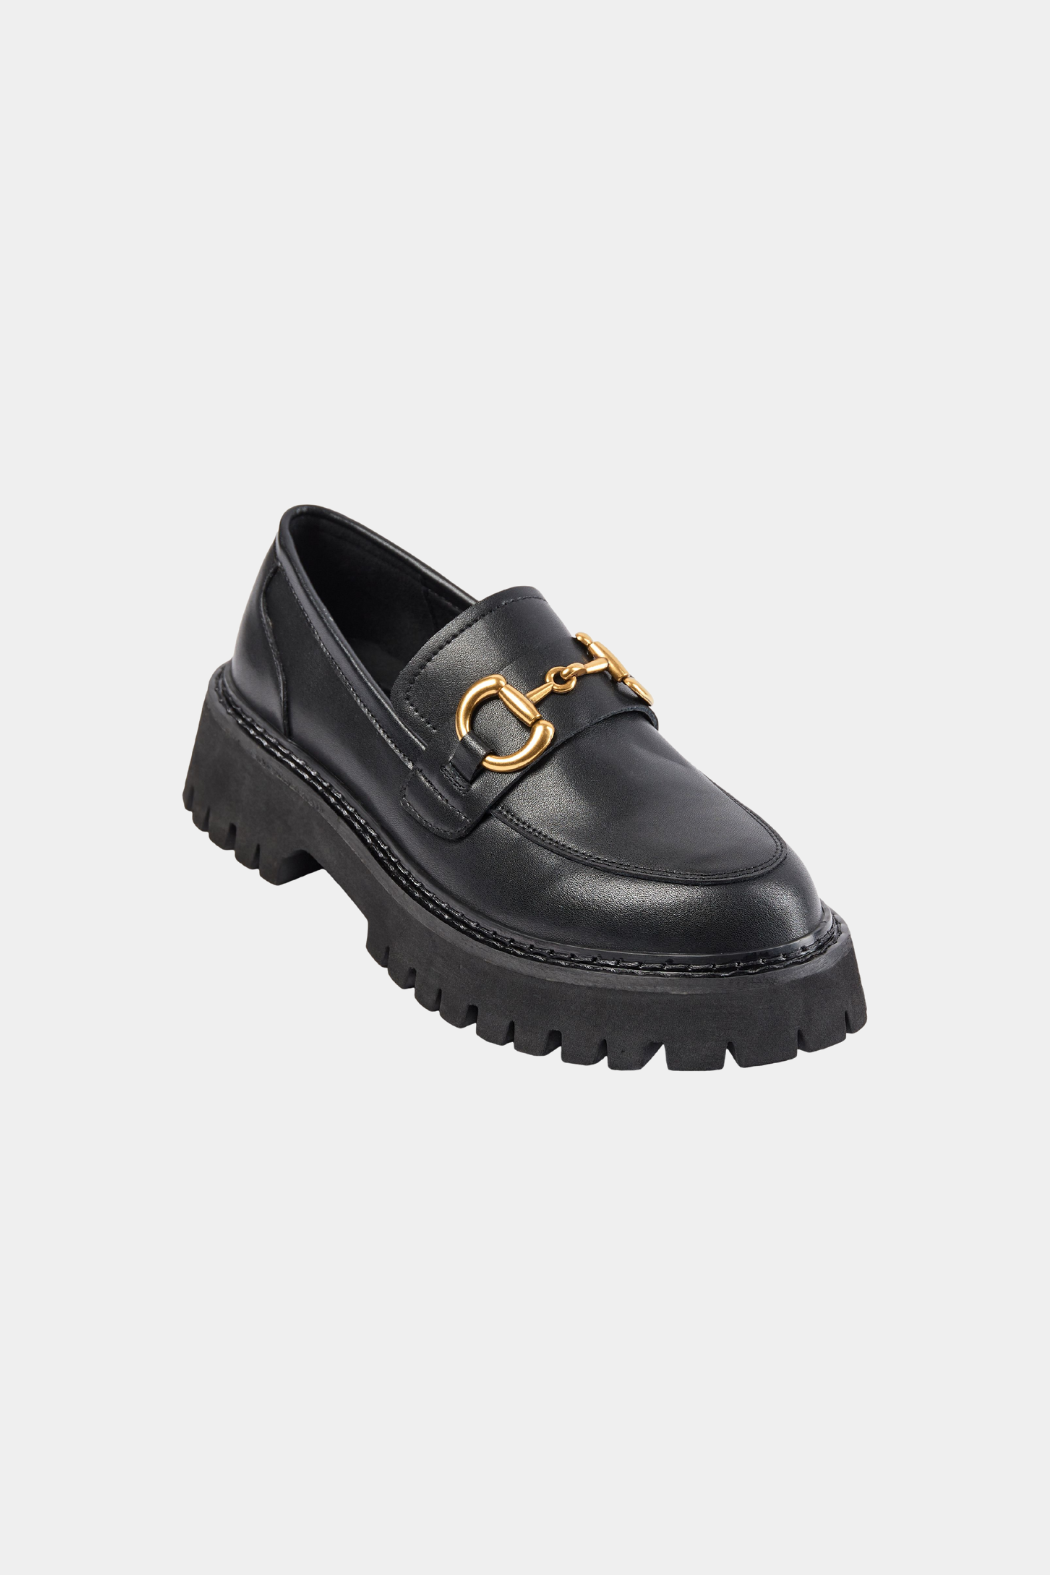 S233757 loafer, black